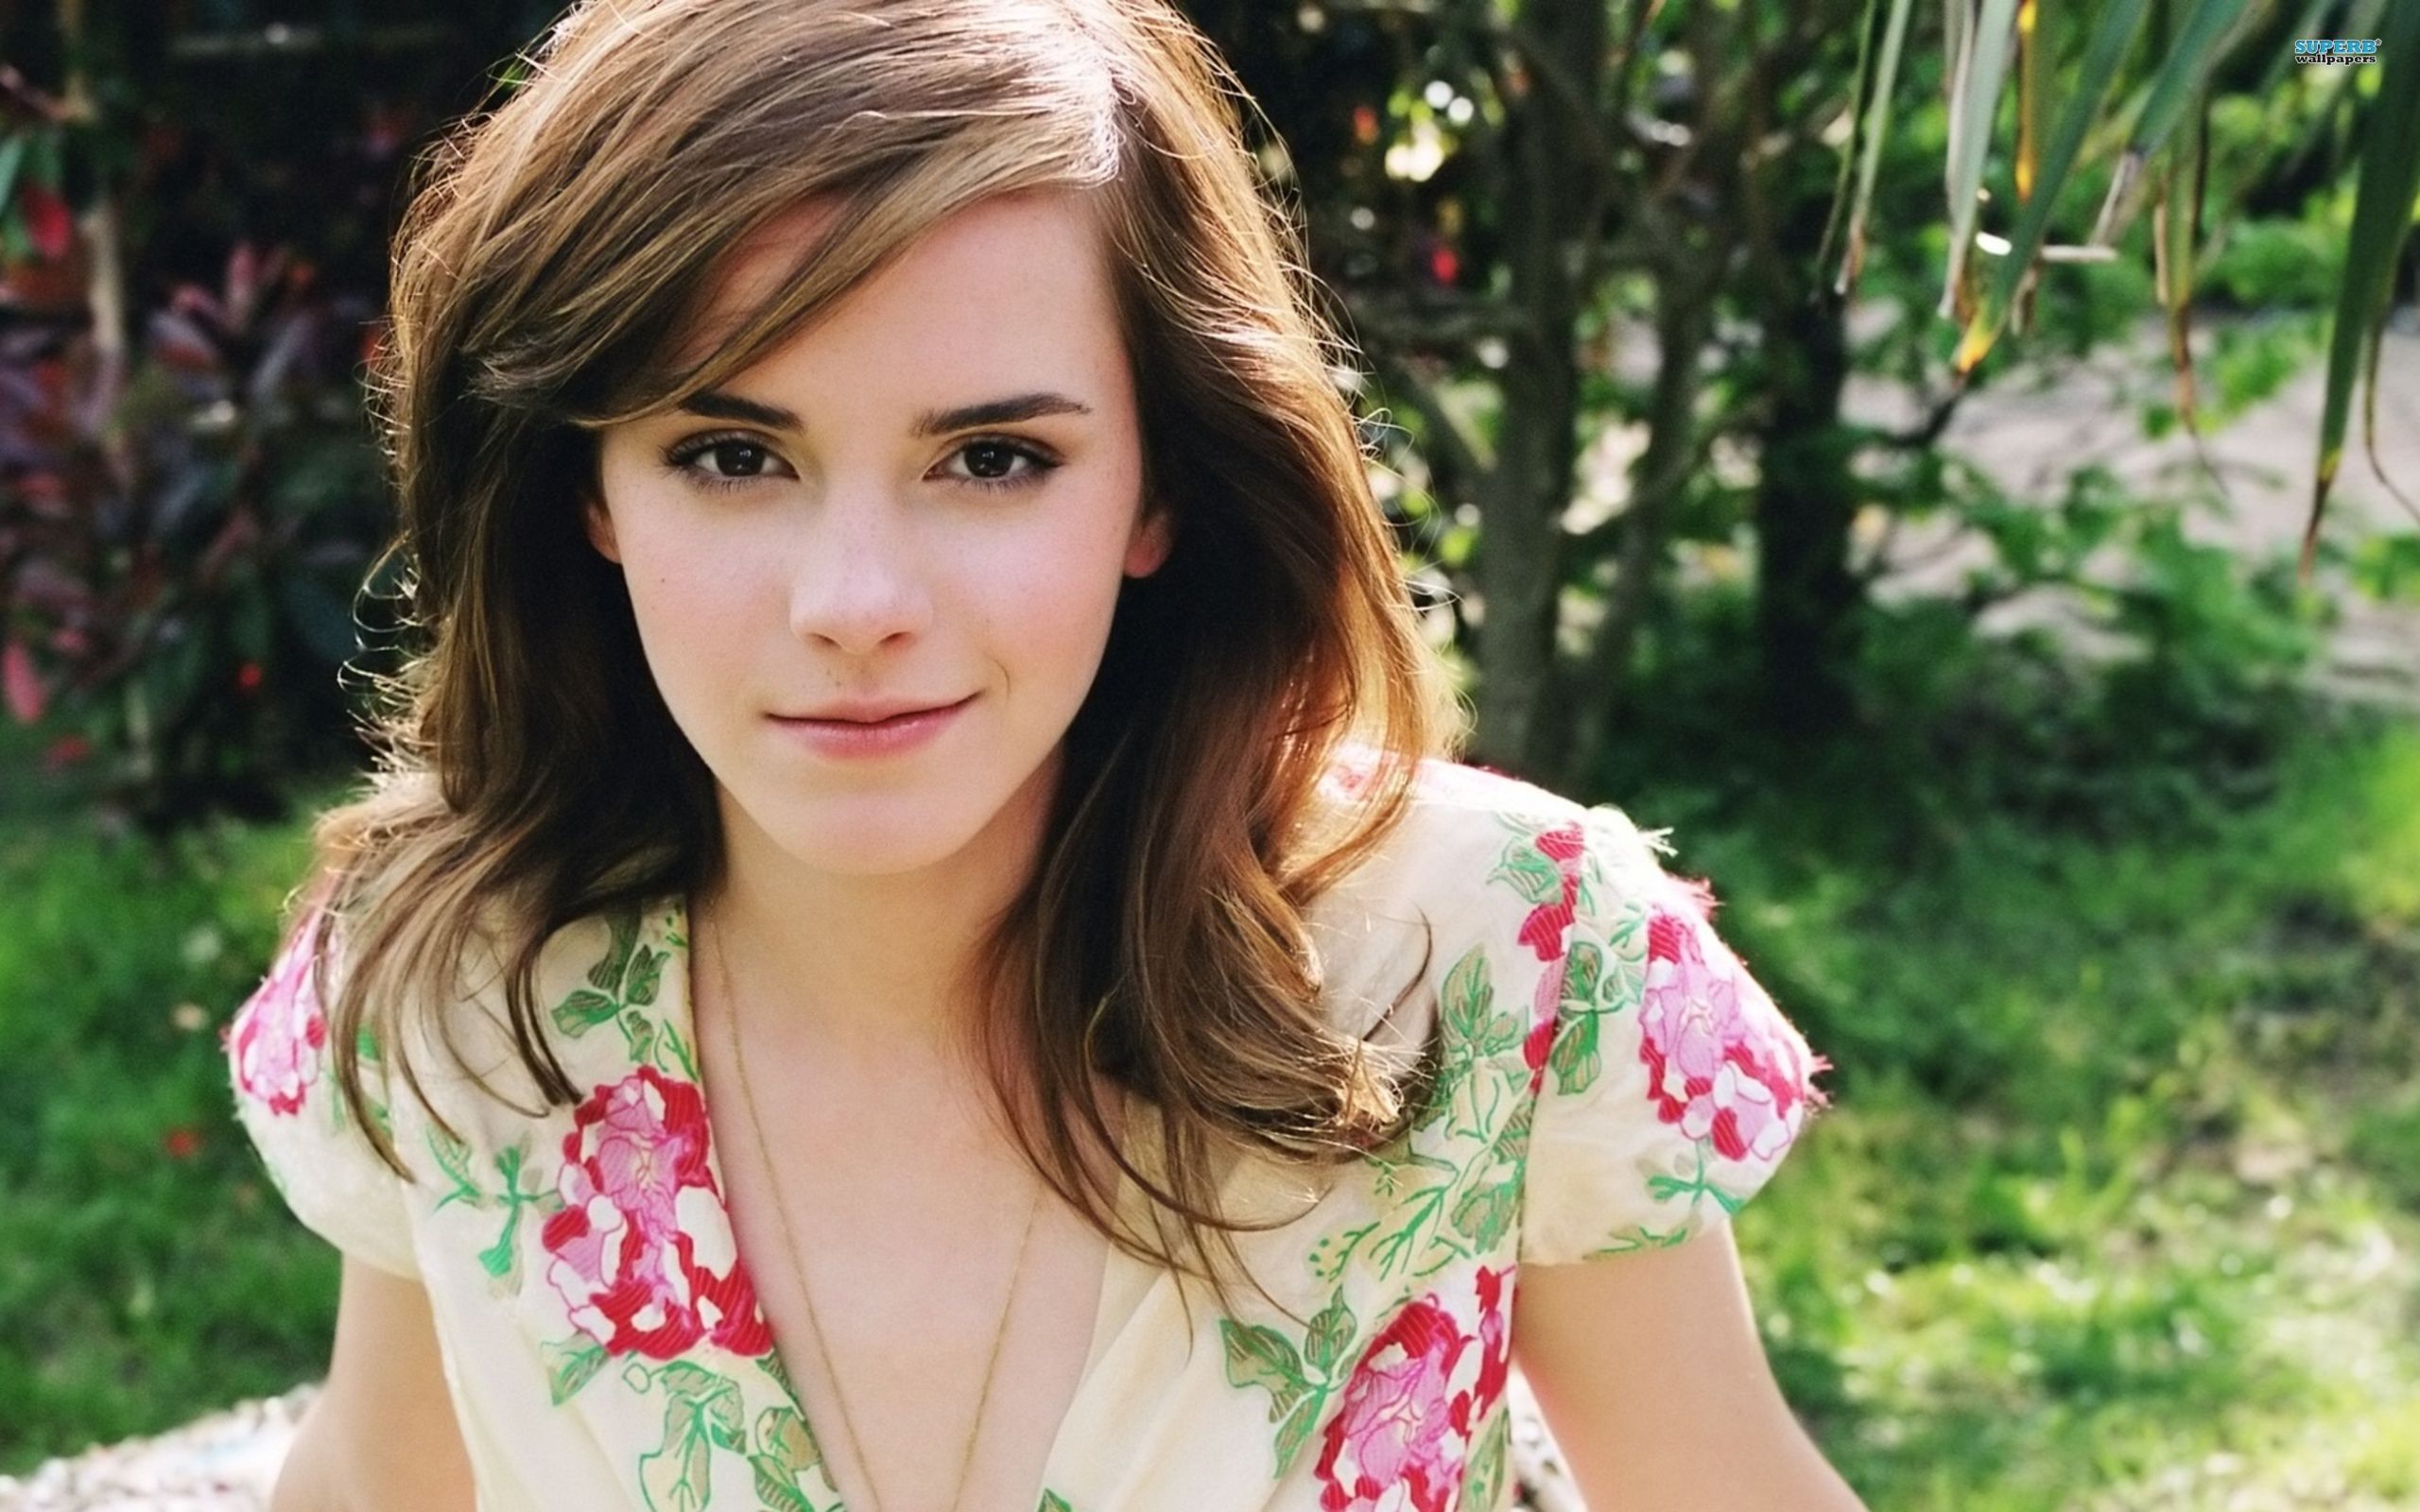 Emma Watson Hd K Wallpapers Wallpaper Cave